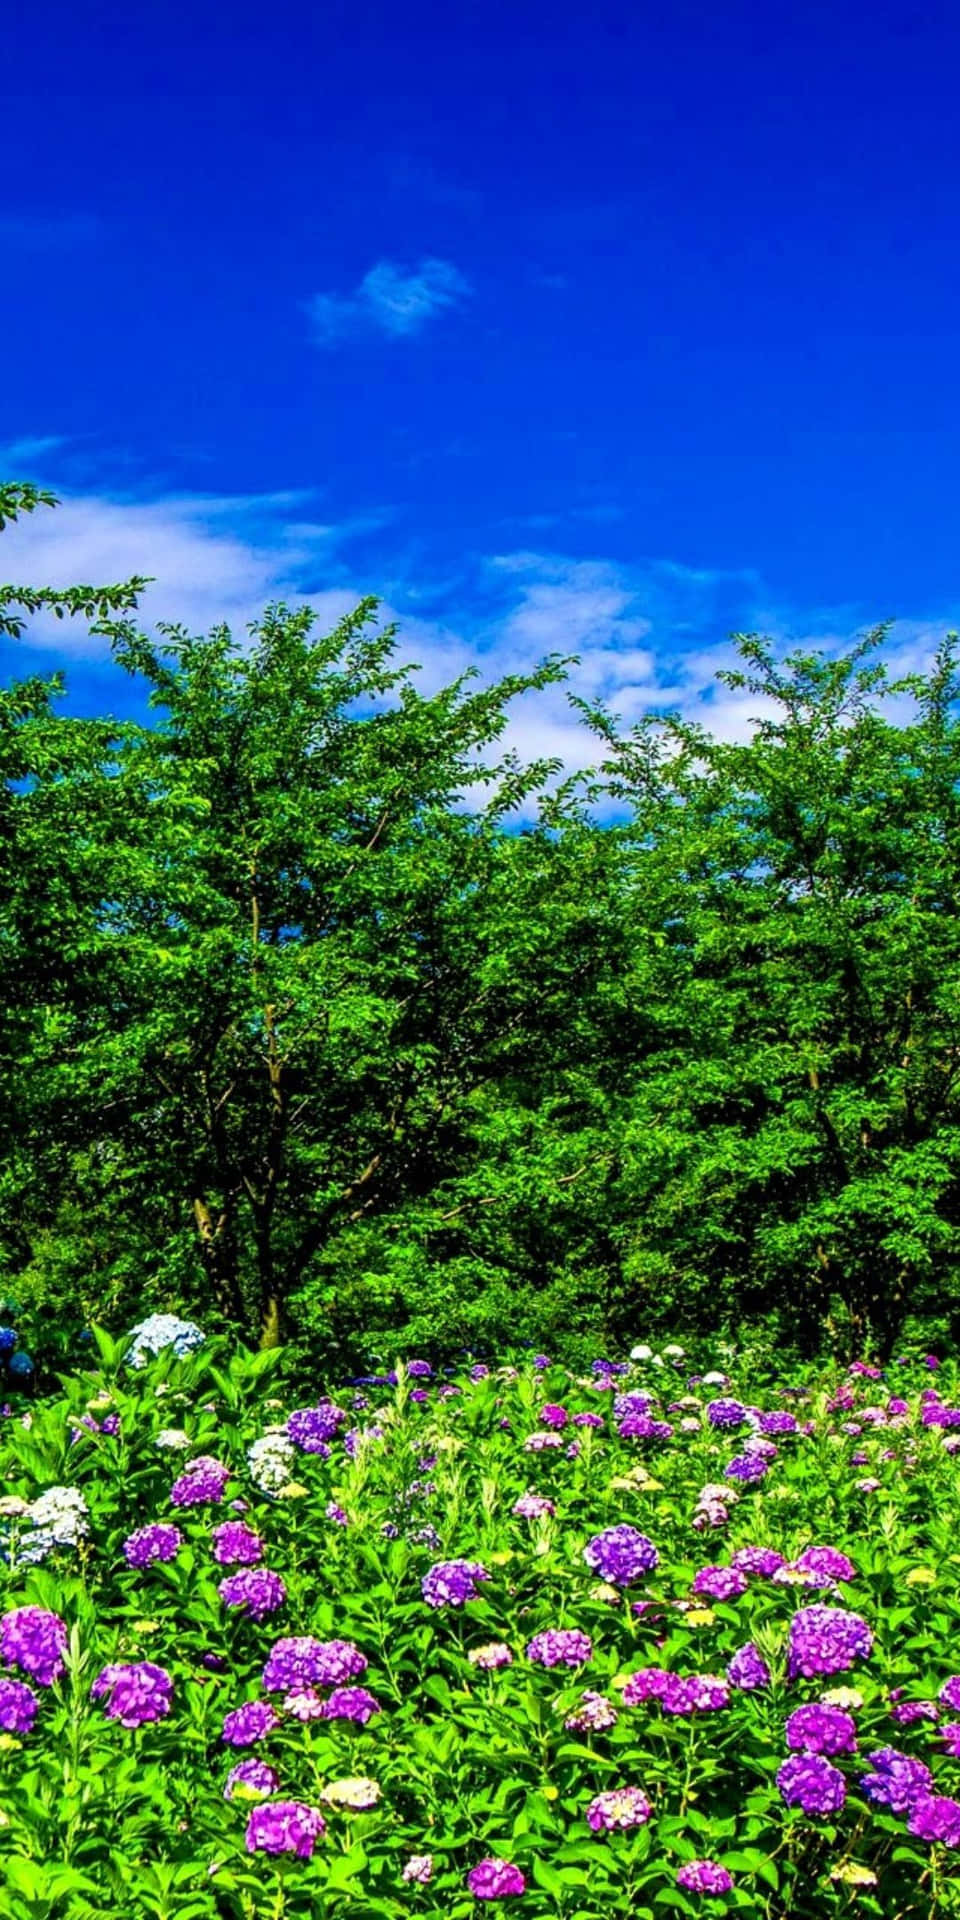 "Wonderful Pixel 3 Spring Landscape"